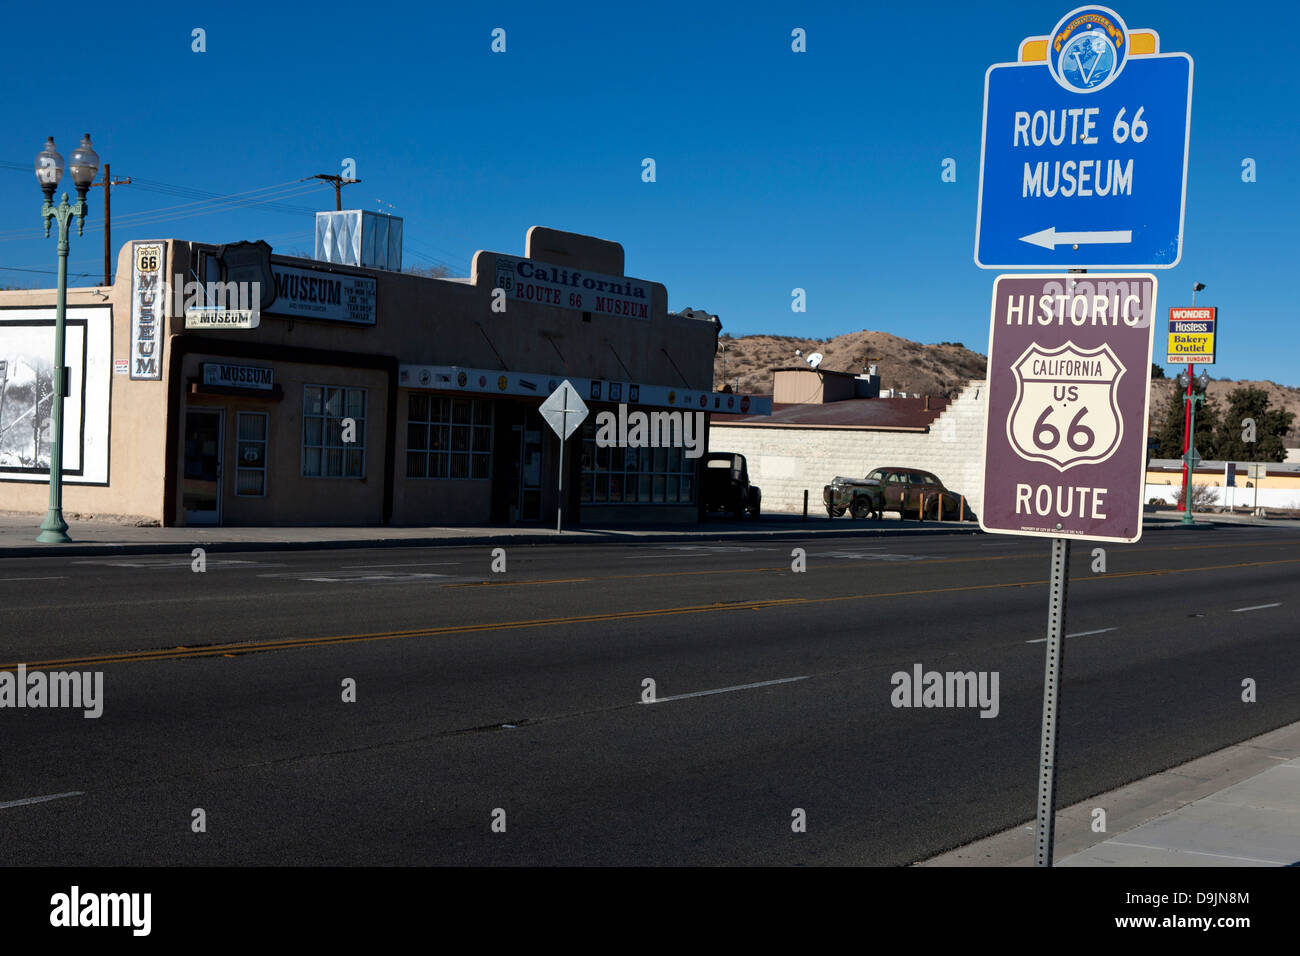 L'historique Route 66 signe en face de la Route 66 Museum, Victorville, Californie, États-Unis d'Amérique Banque D'Images